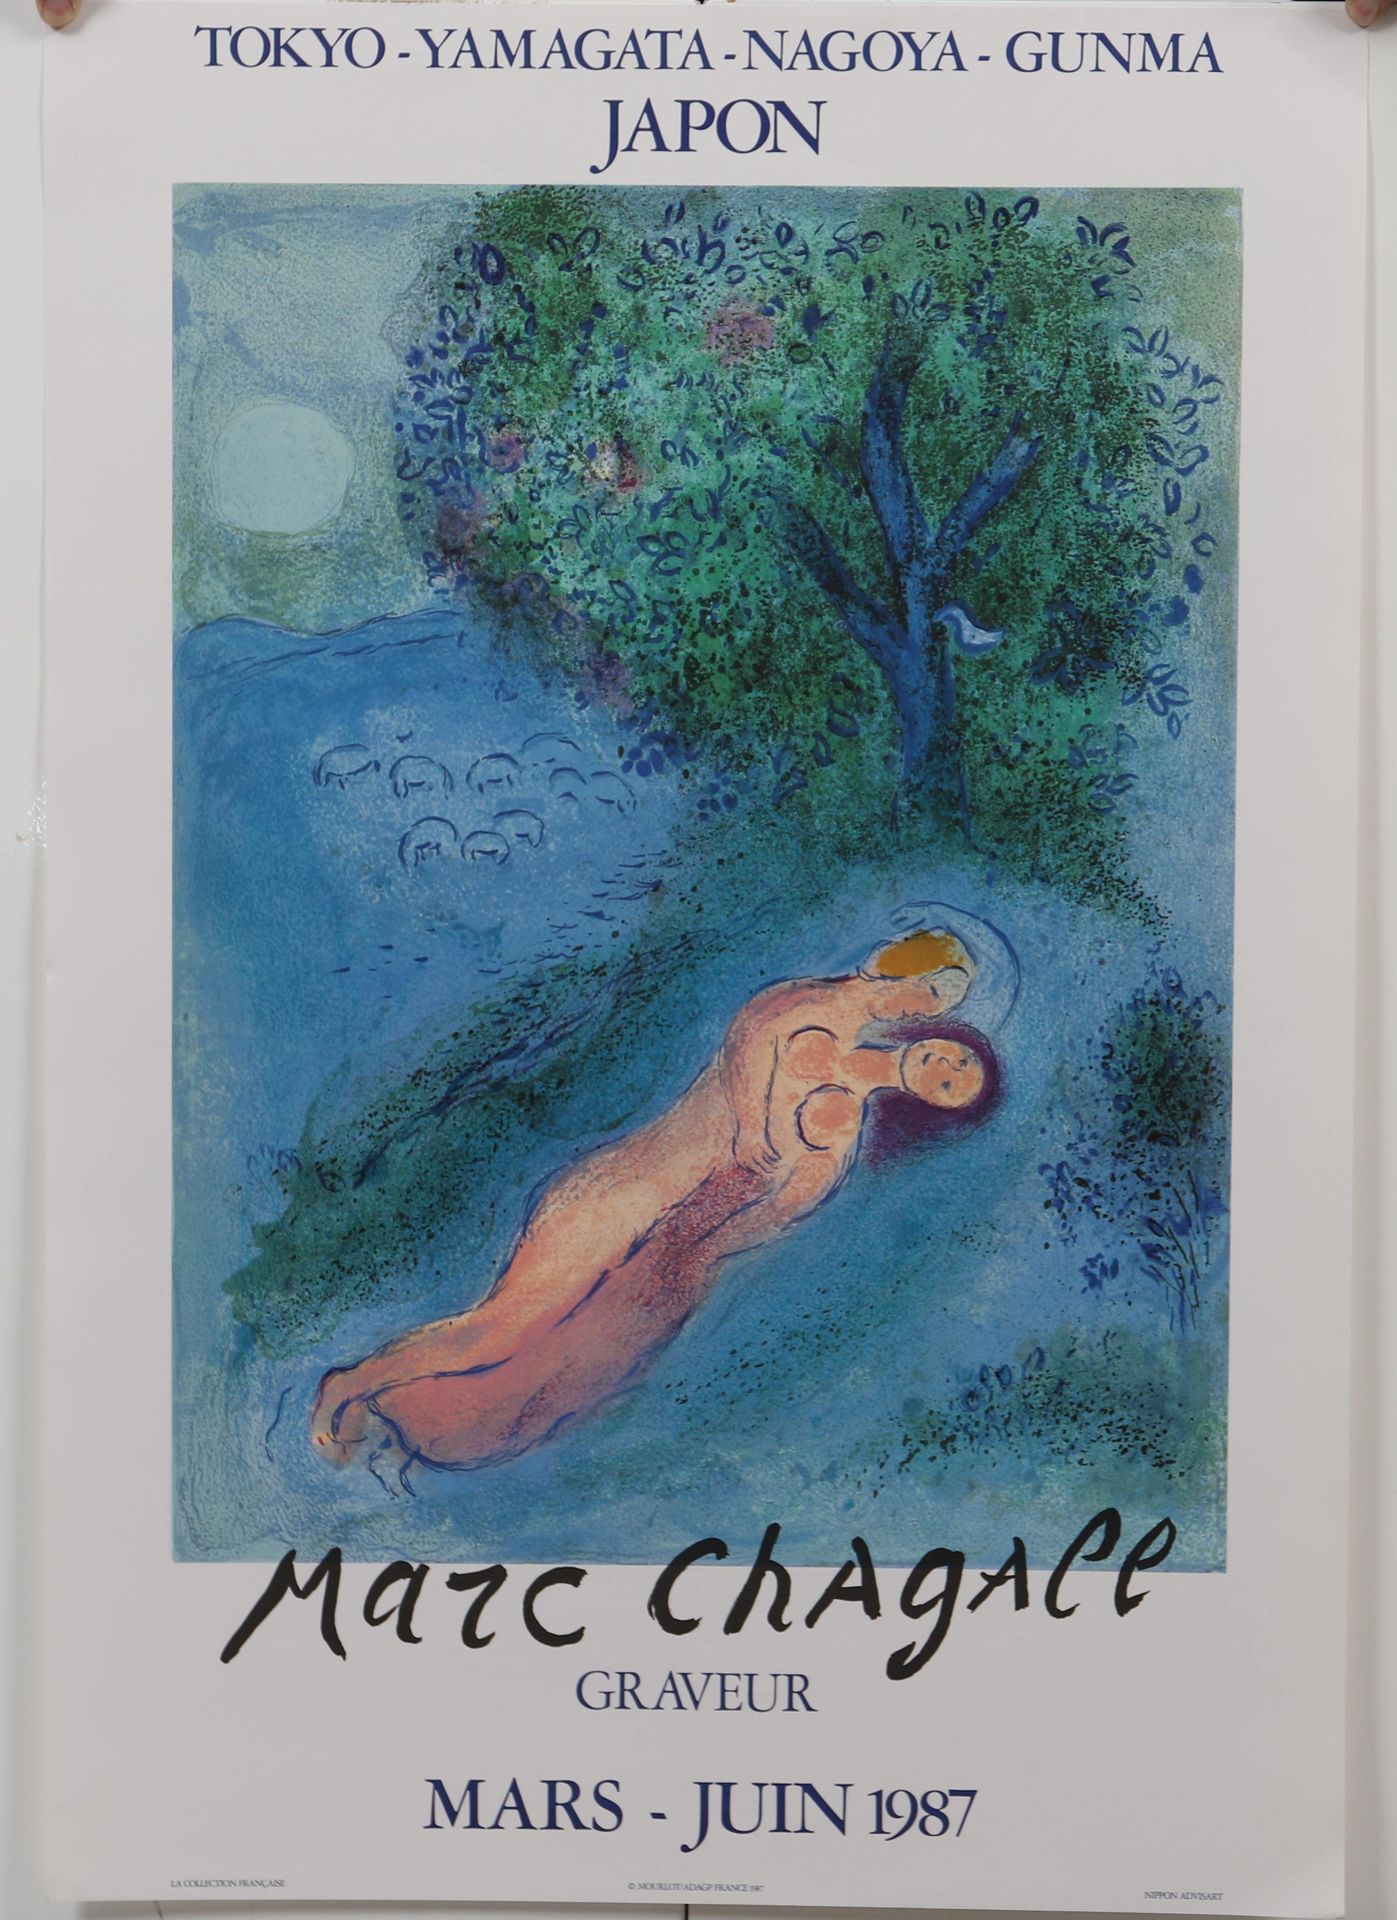 Null Cartel Marc CHAGALL (1887-1985)

Edición 1987 del Atelier Mourlot - París

&hellip;